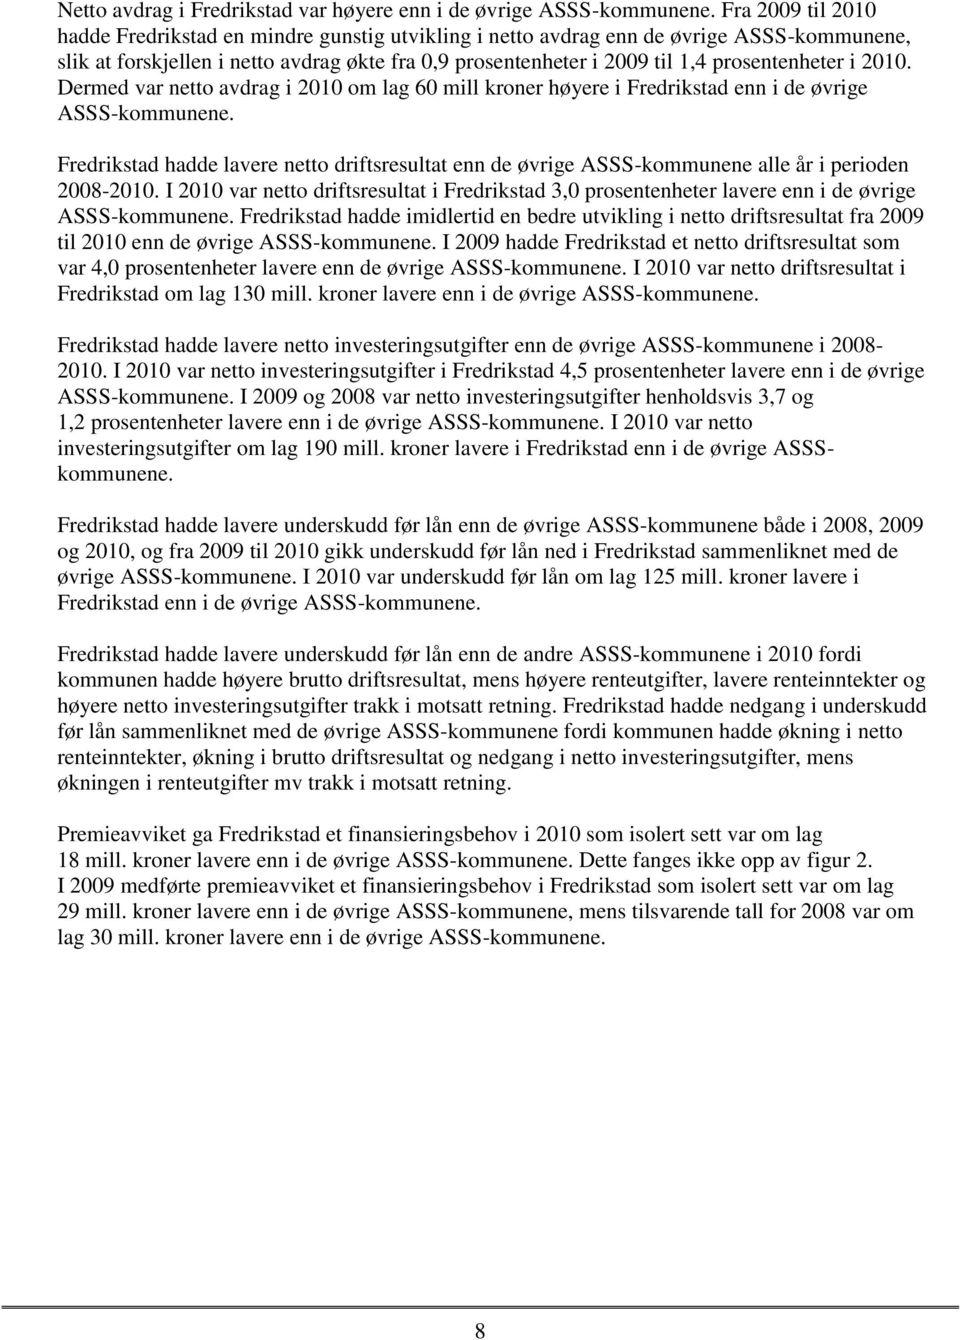 prosentenheter i 2010. Dermed var netto avdrag i 2010 om lag 60 mill kroner høyere i Fredrikstad enn i de øvrige ASSS-kommunene.